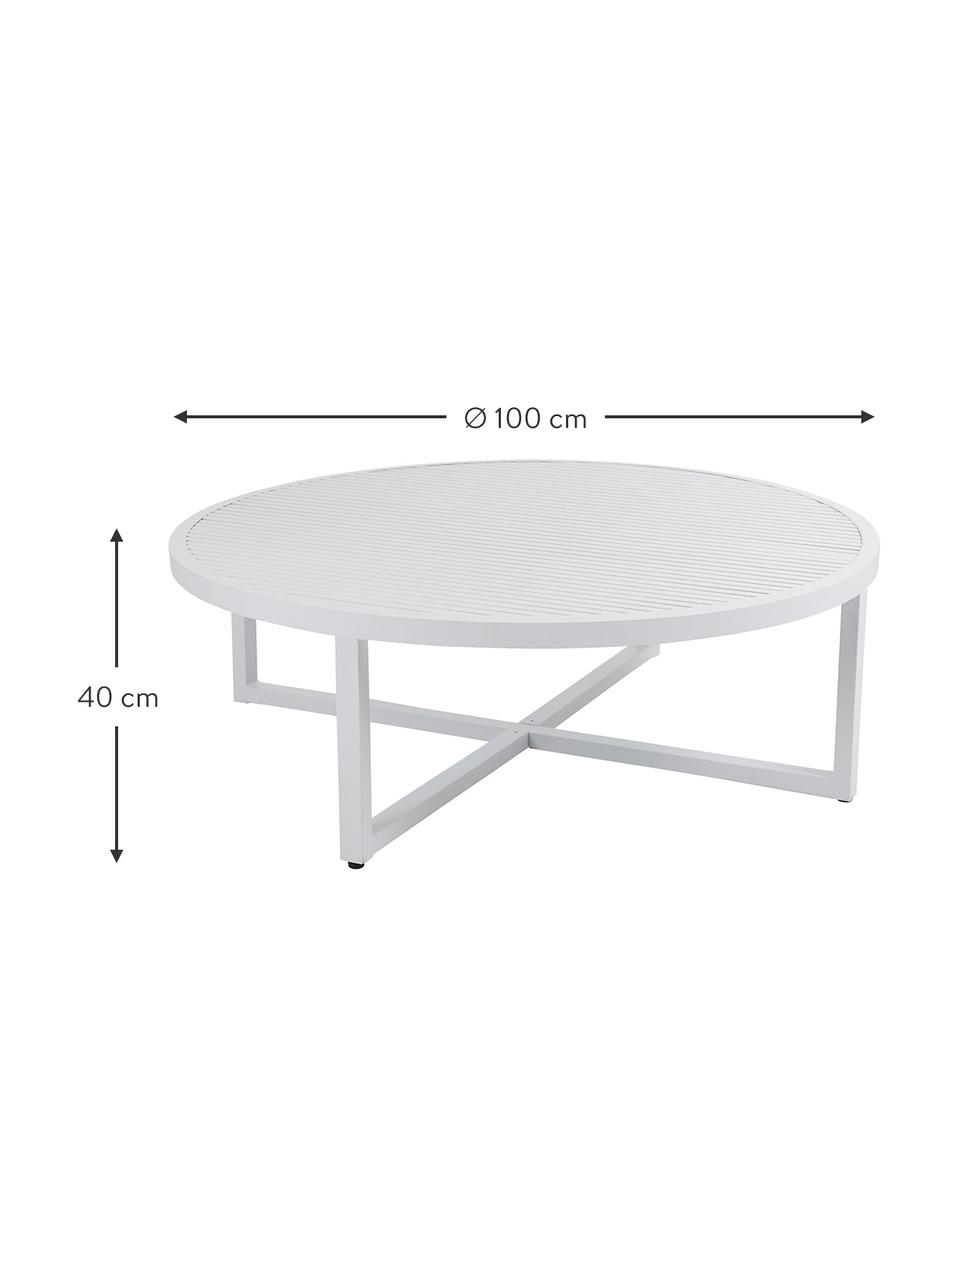 Ogrodowy stolik kawowy Vevi, Aluminium malowane proszkowo, Biały, Ø 100 x W 40 cm